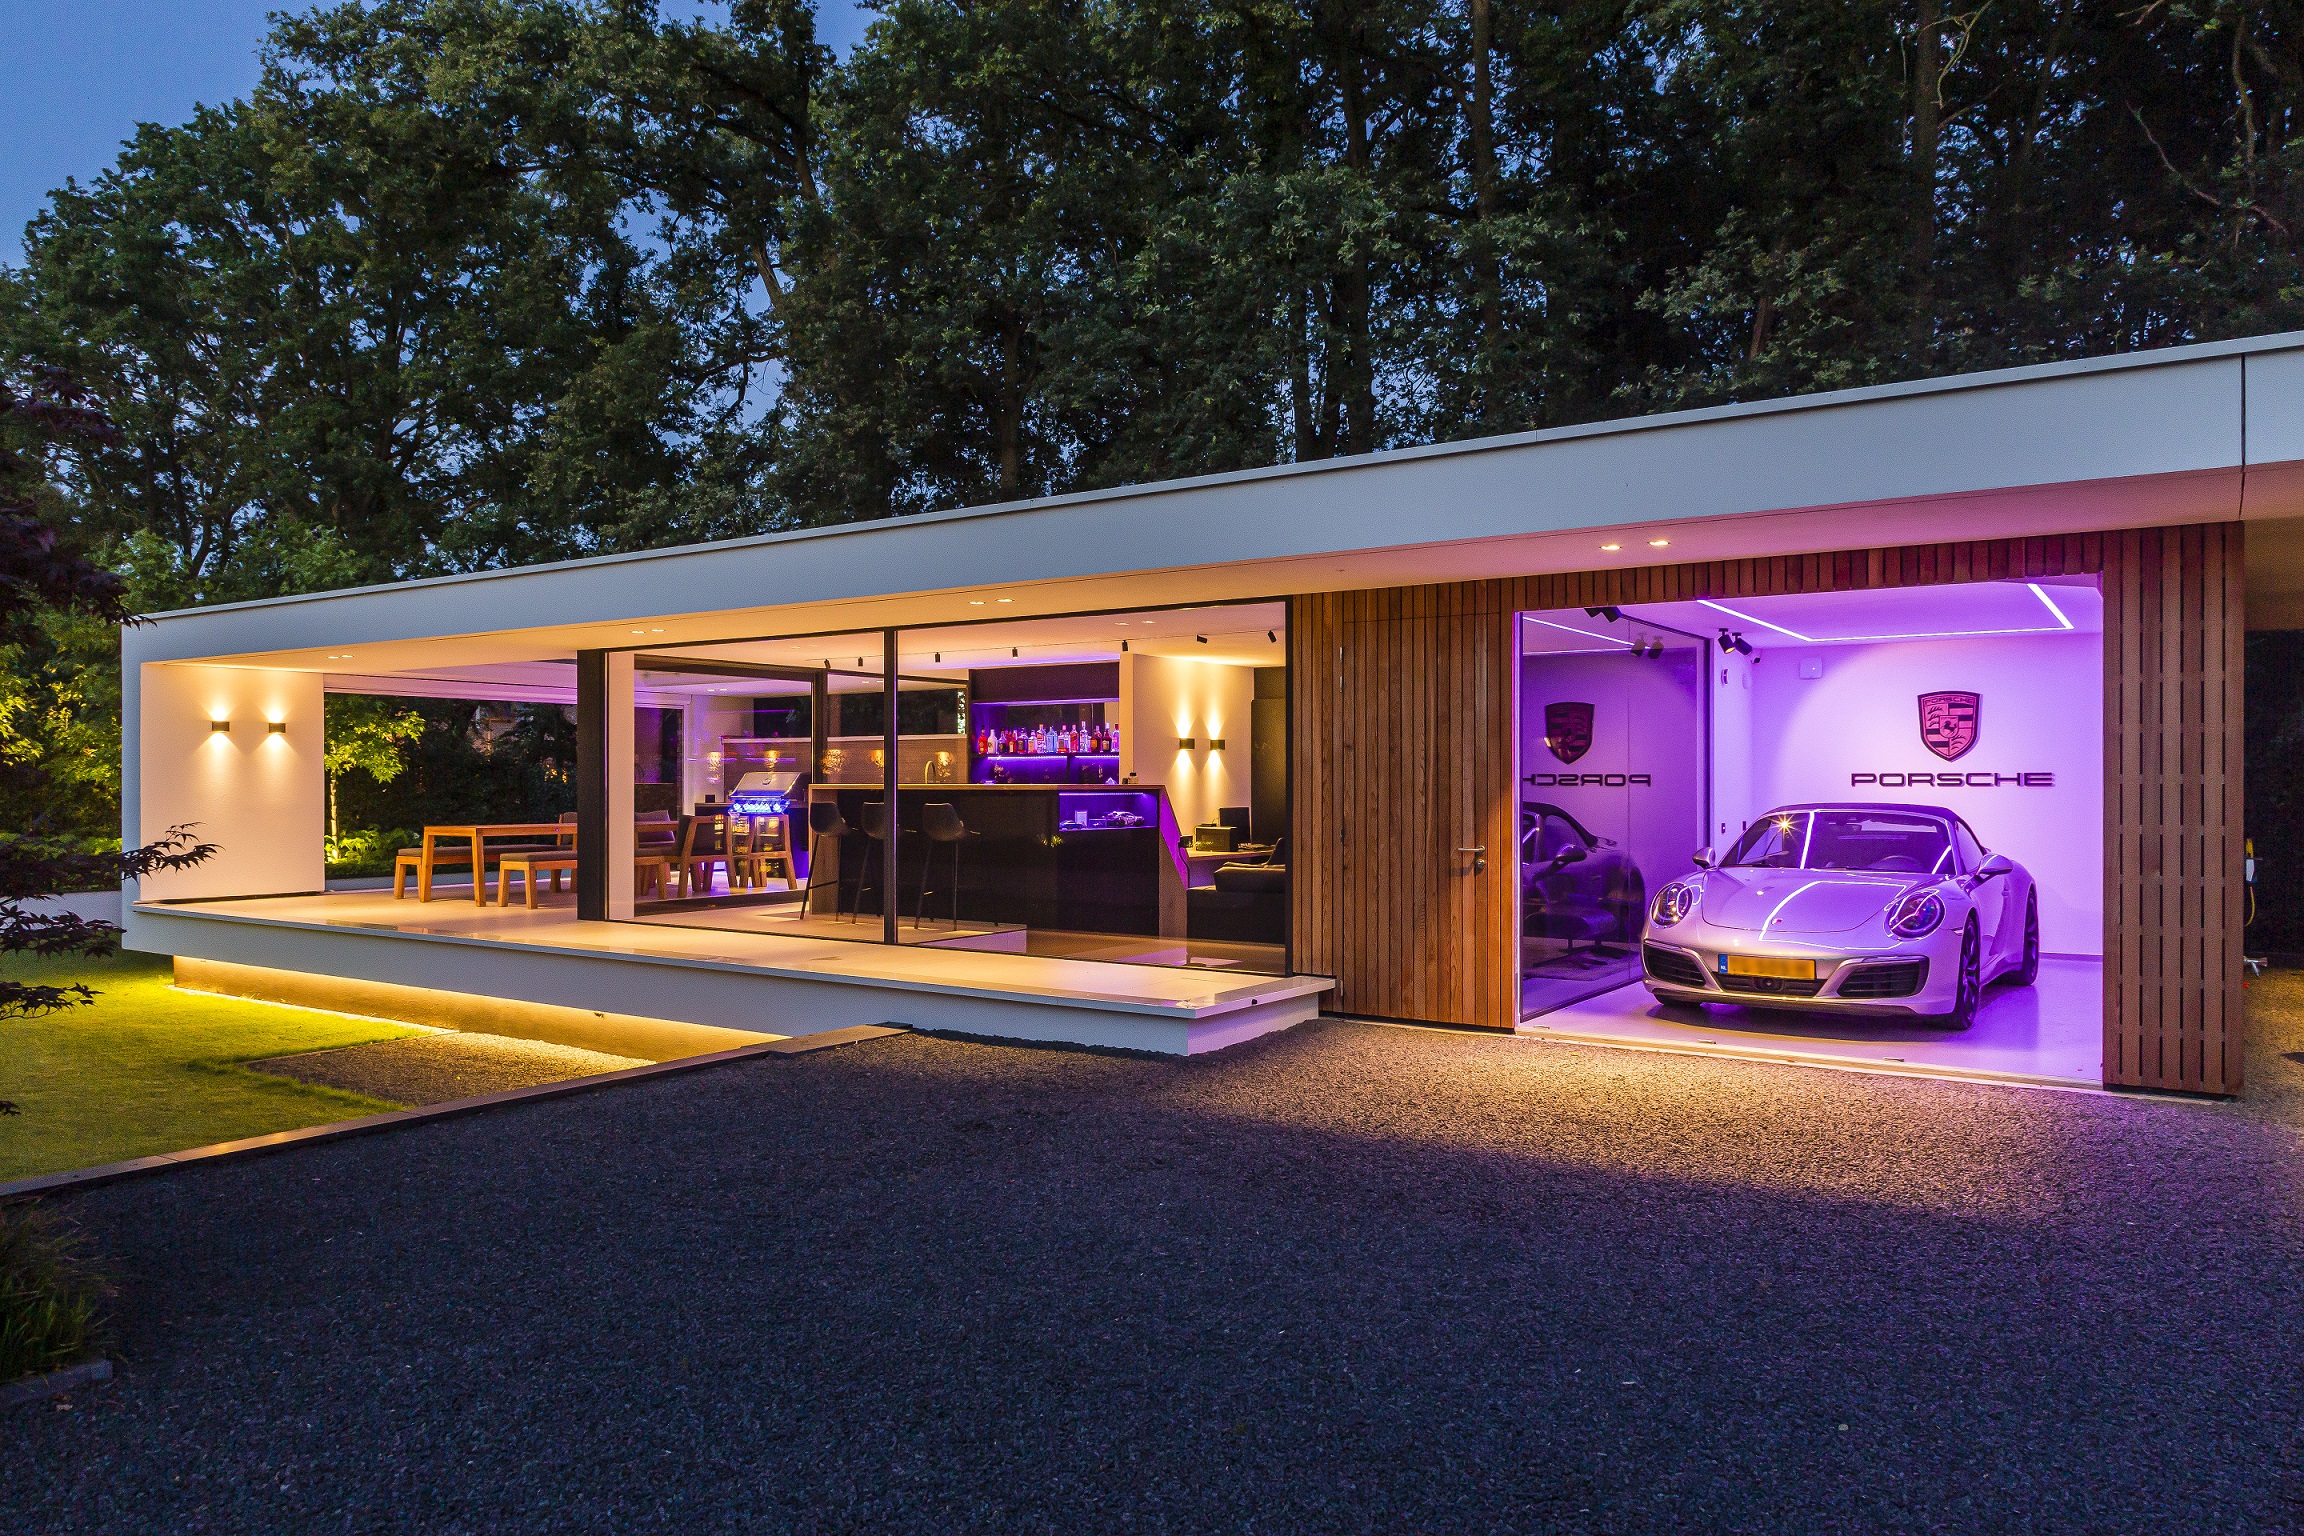 Foto : Luxe buitenverblijf met bar en garage